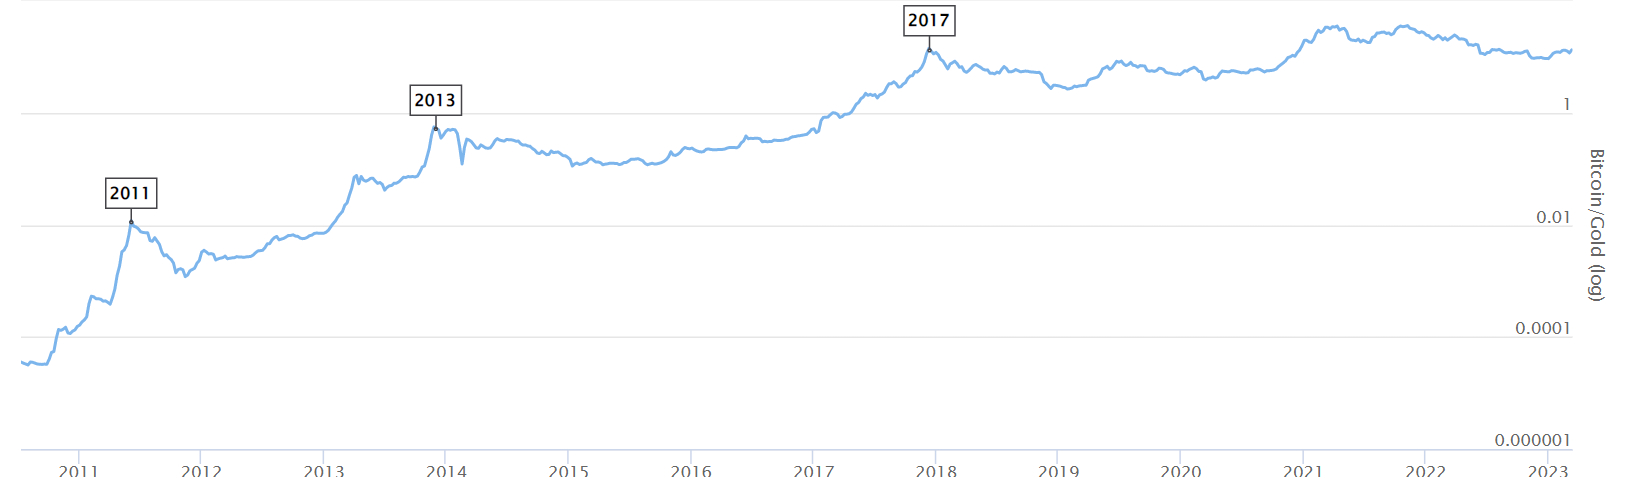 graf over Bitcoins pris sammenlignet med guld